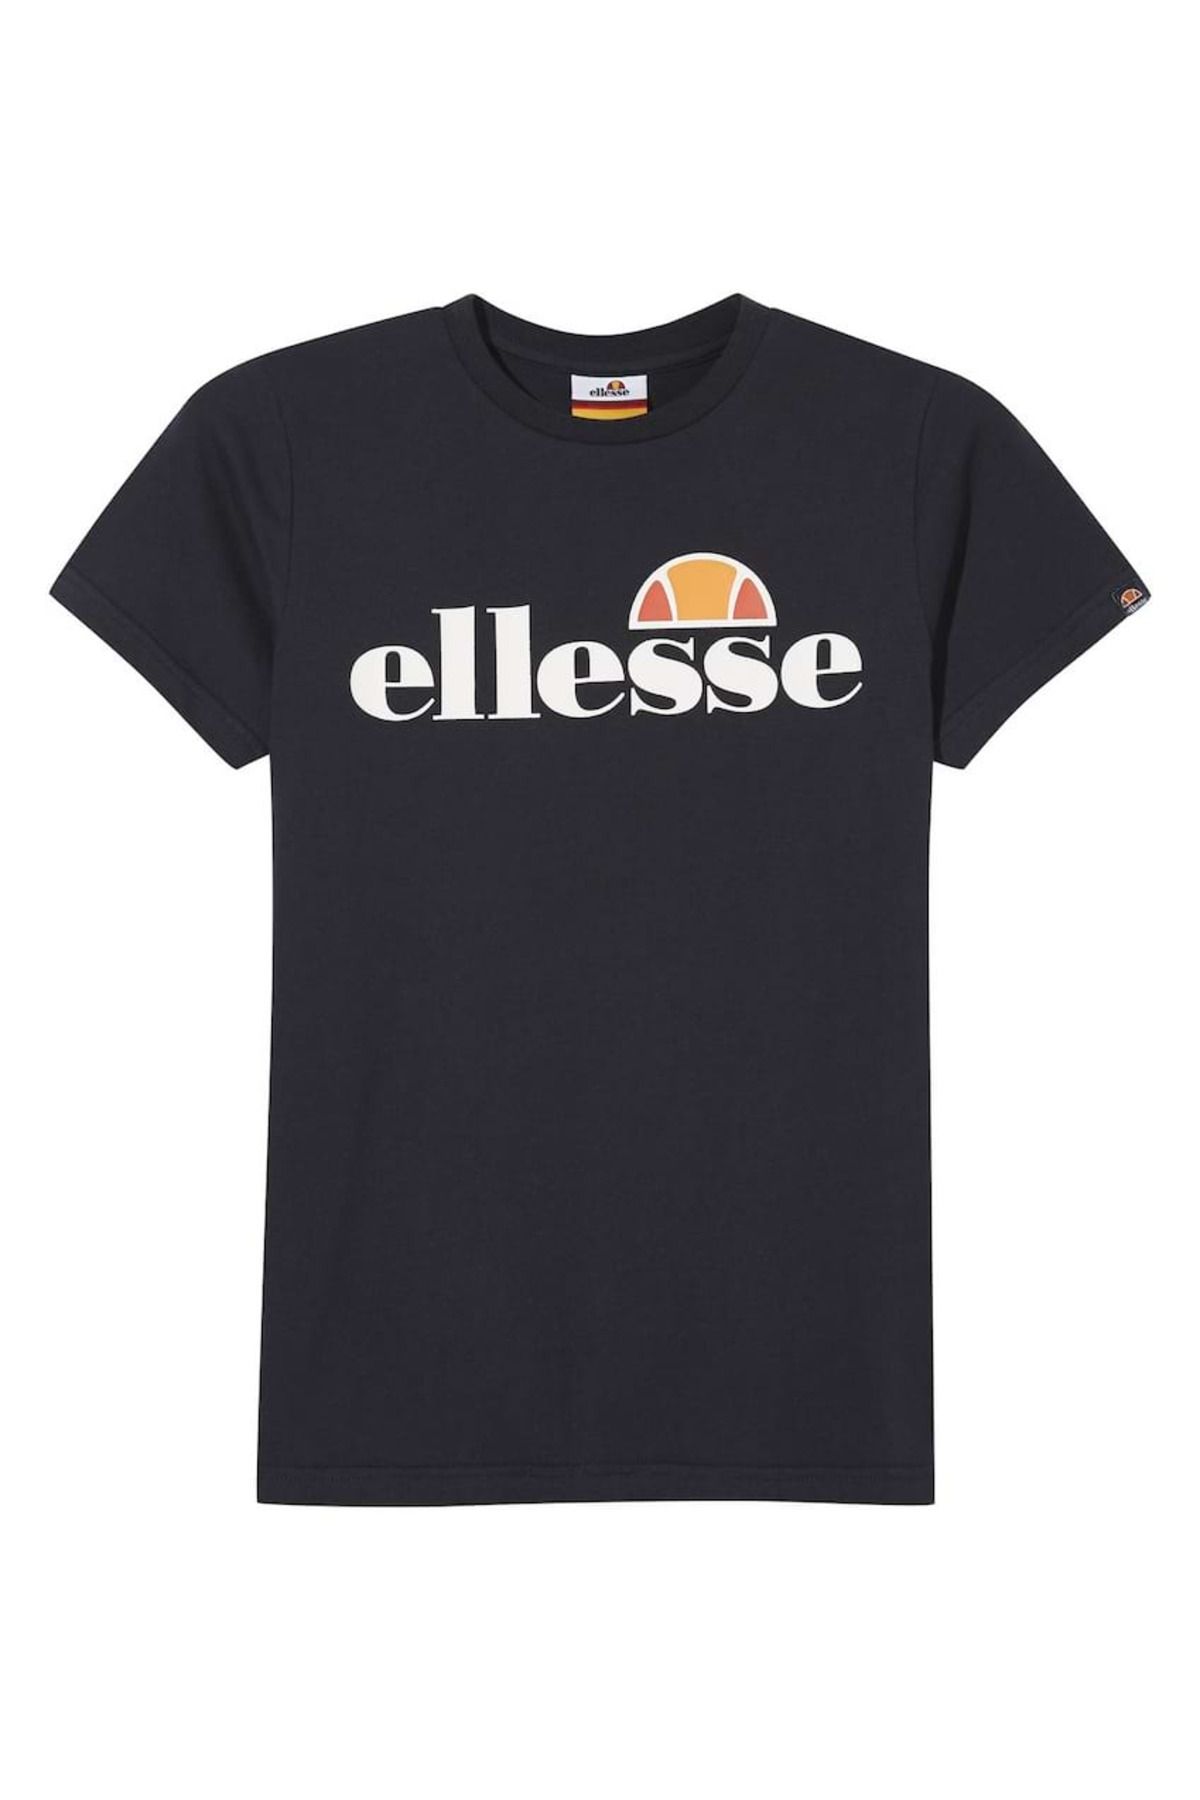 Ellesse - T-Shirt Tee kurzarm, - Rundhals, Trendyol Junior, MALIA Jungen Logo-Print